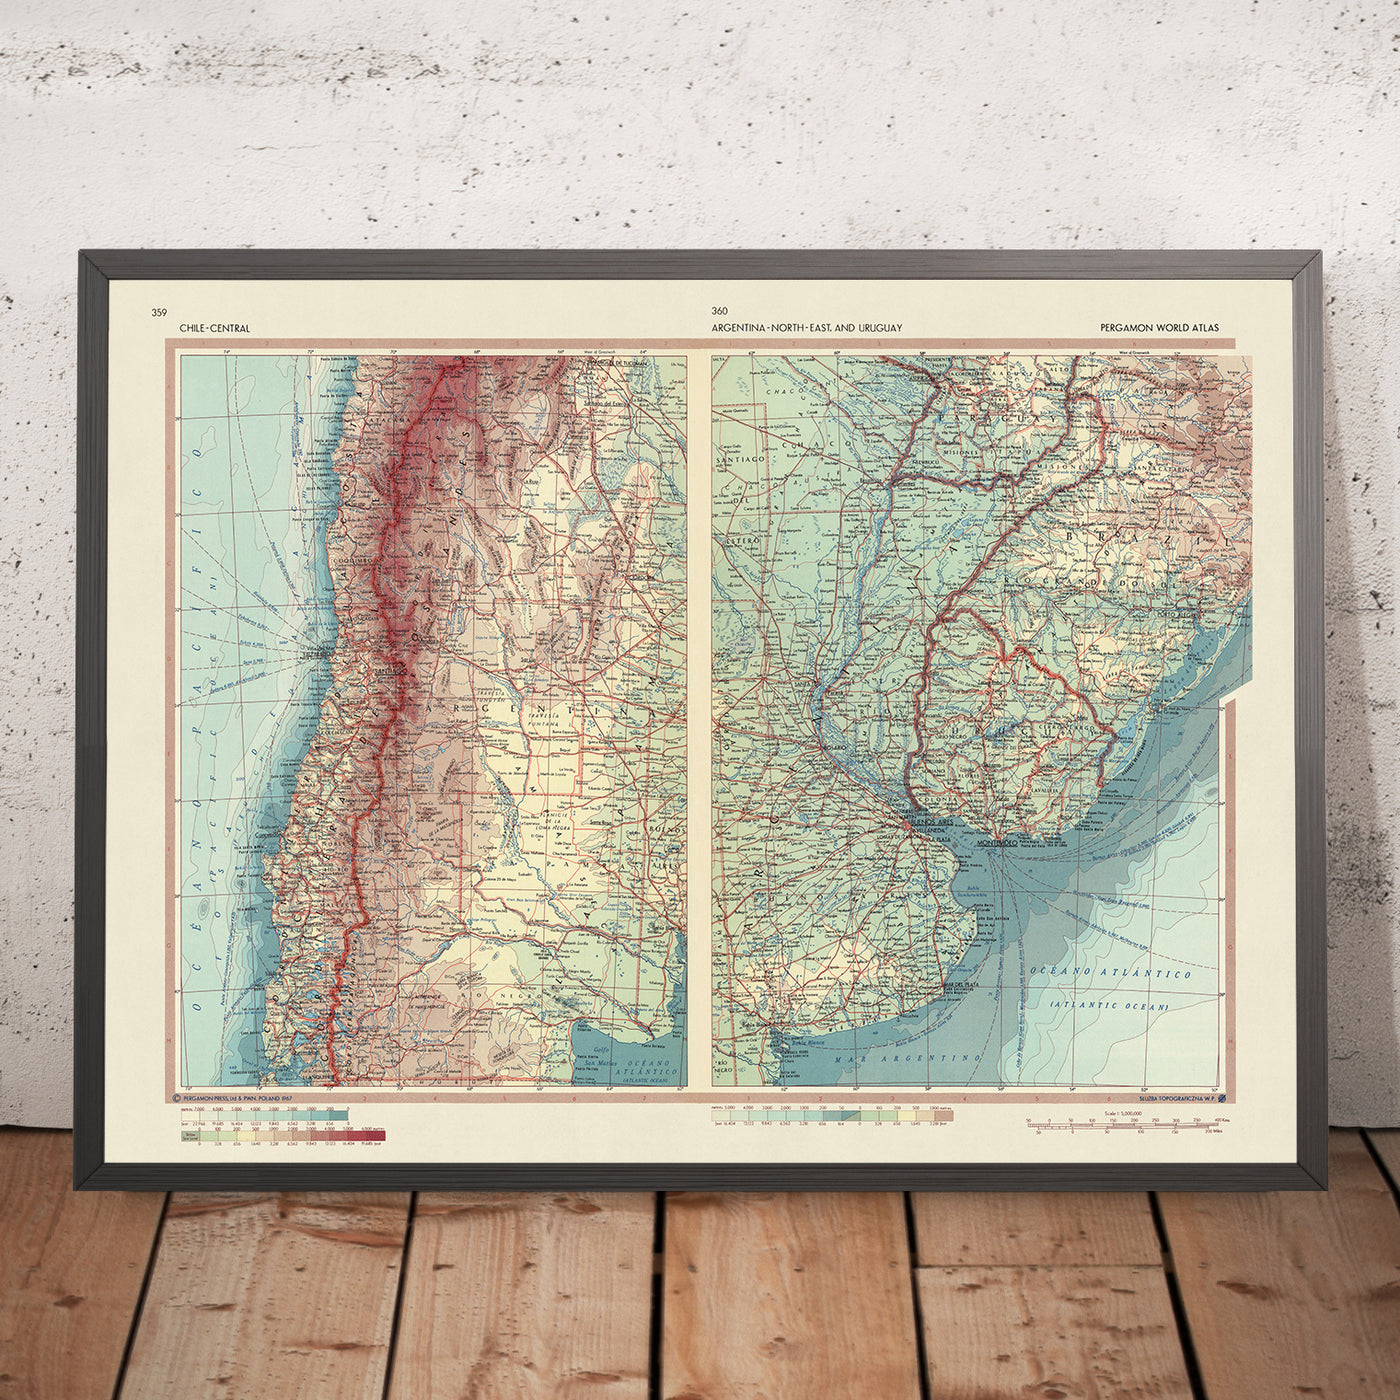 Alte Karte von Chile, Argentinien und Uruguay, 1967: Santiago, Buenos Aires, Montevideo, Anden, Pampa